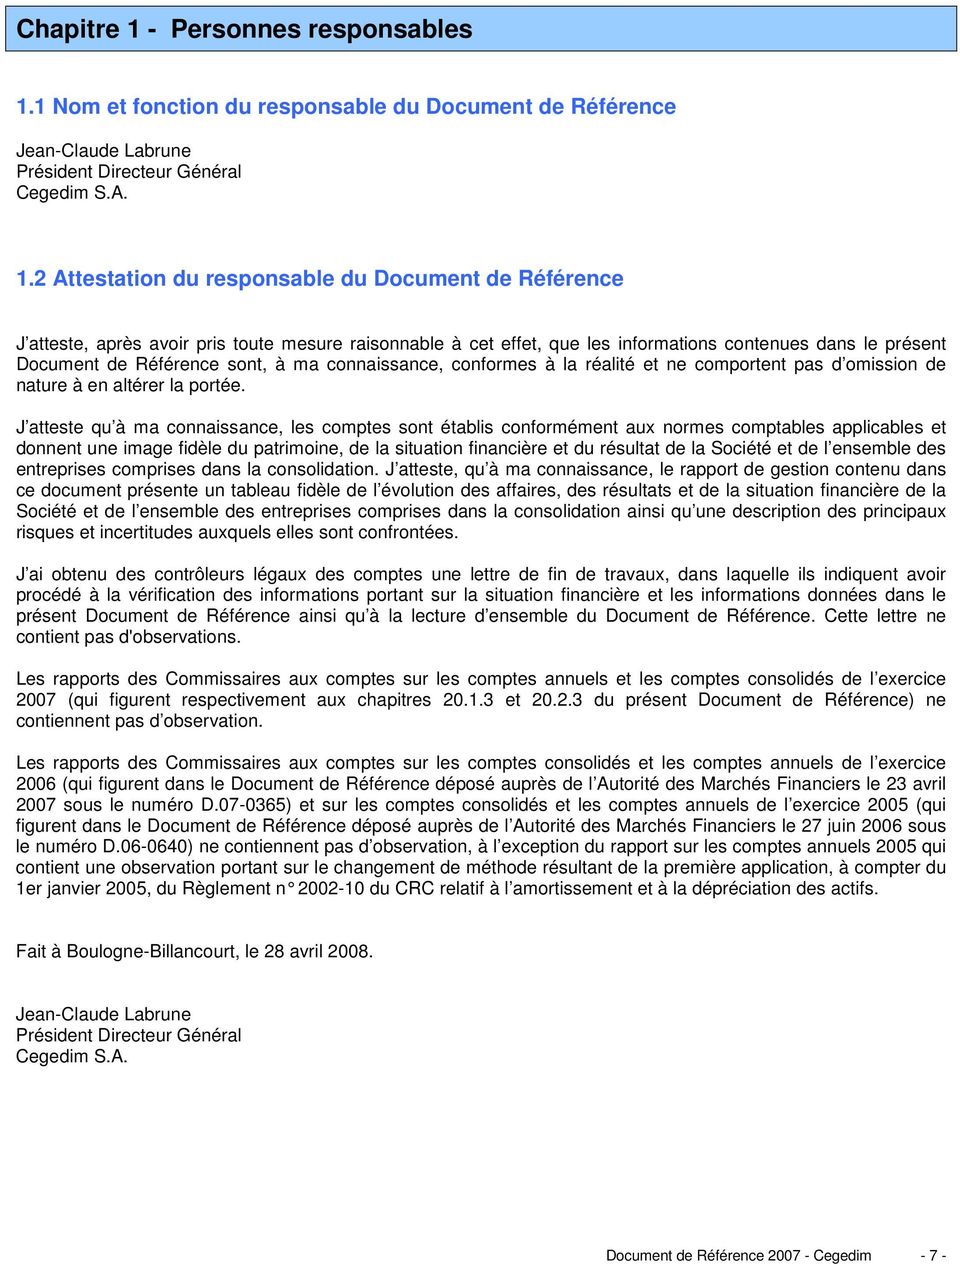 1 Nom et fonction du responsable du Document de Référence Jean-Claude Labrune Président Directeur Général Cegedim S.A. 1.